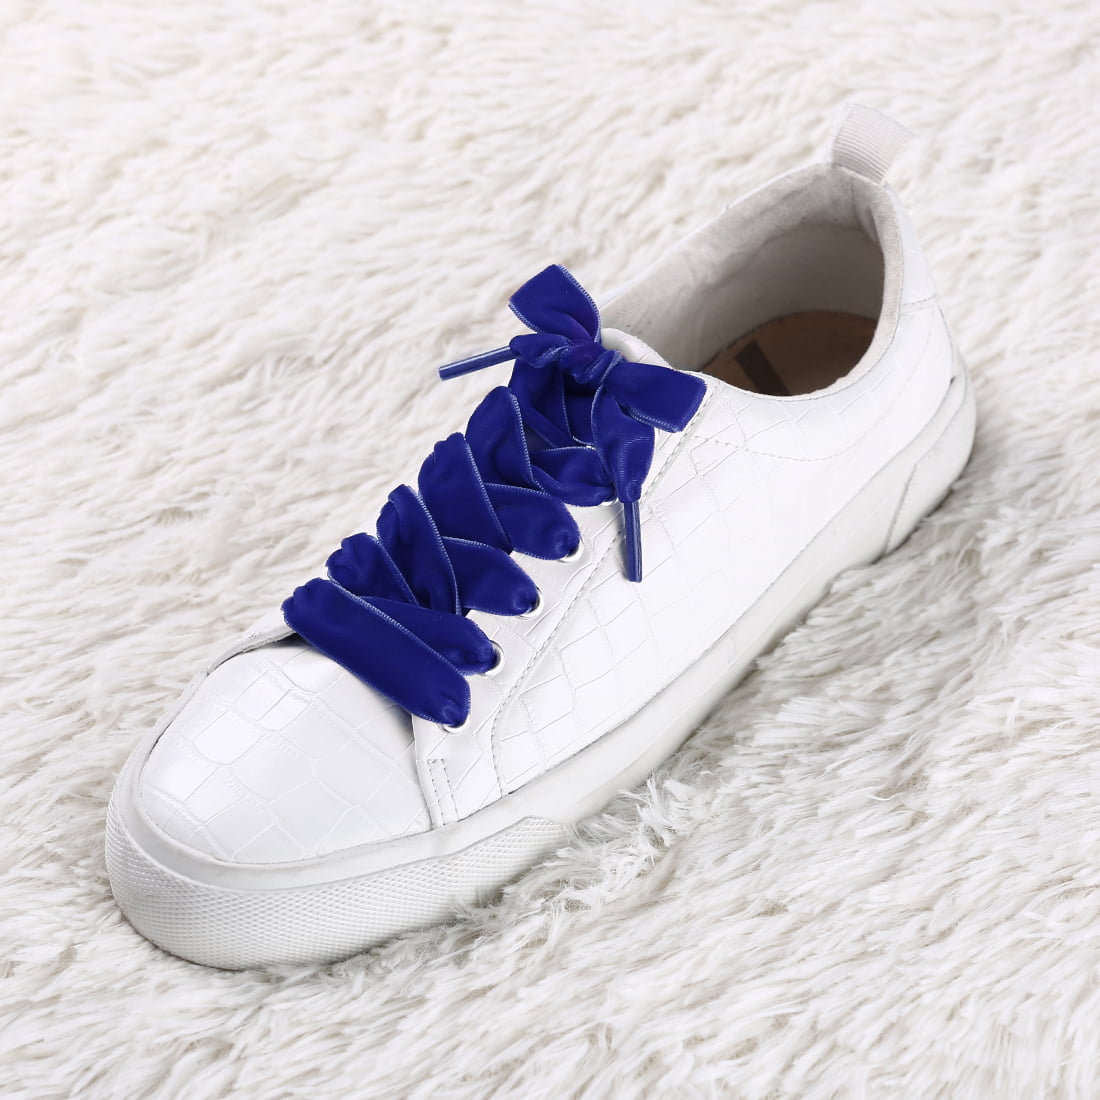 royal blue shoe boots